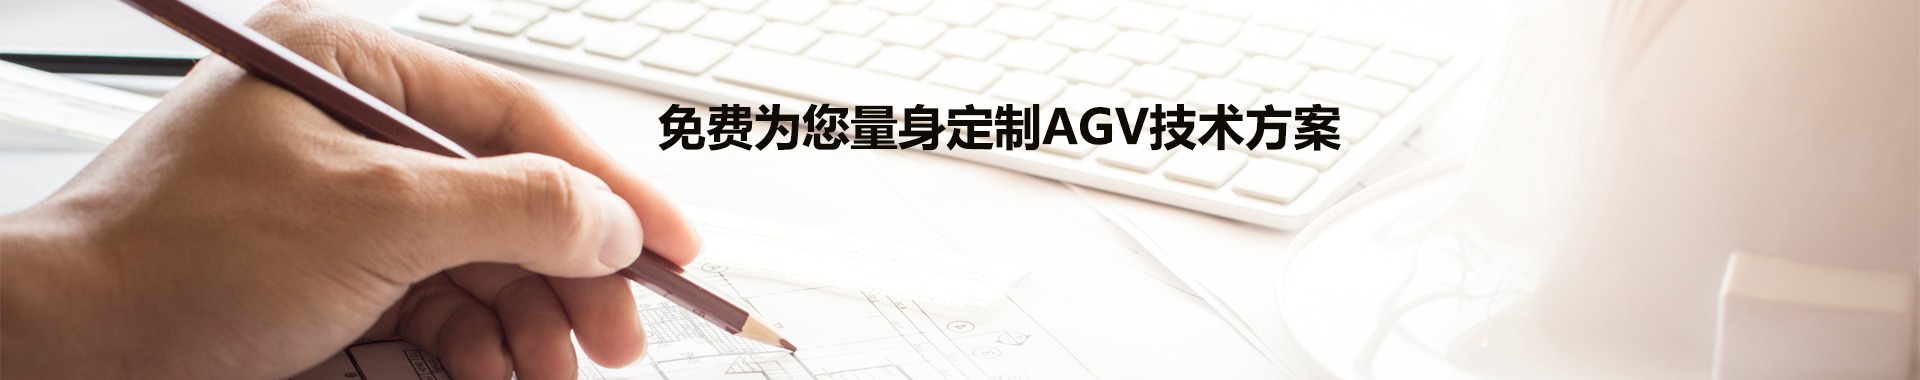 免費AGV技術方案定制